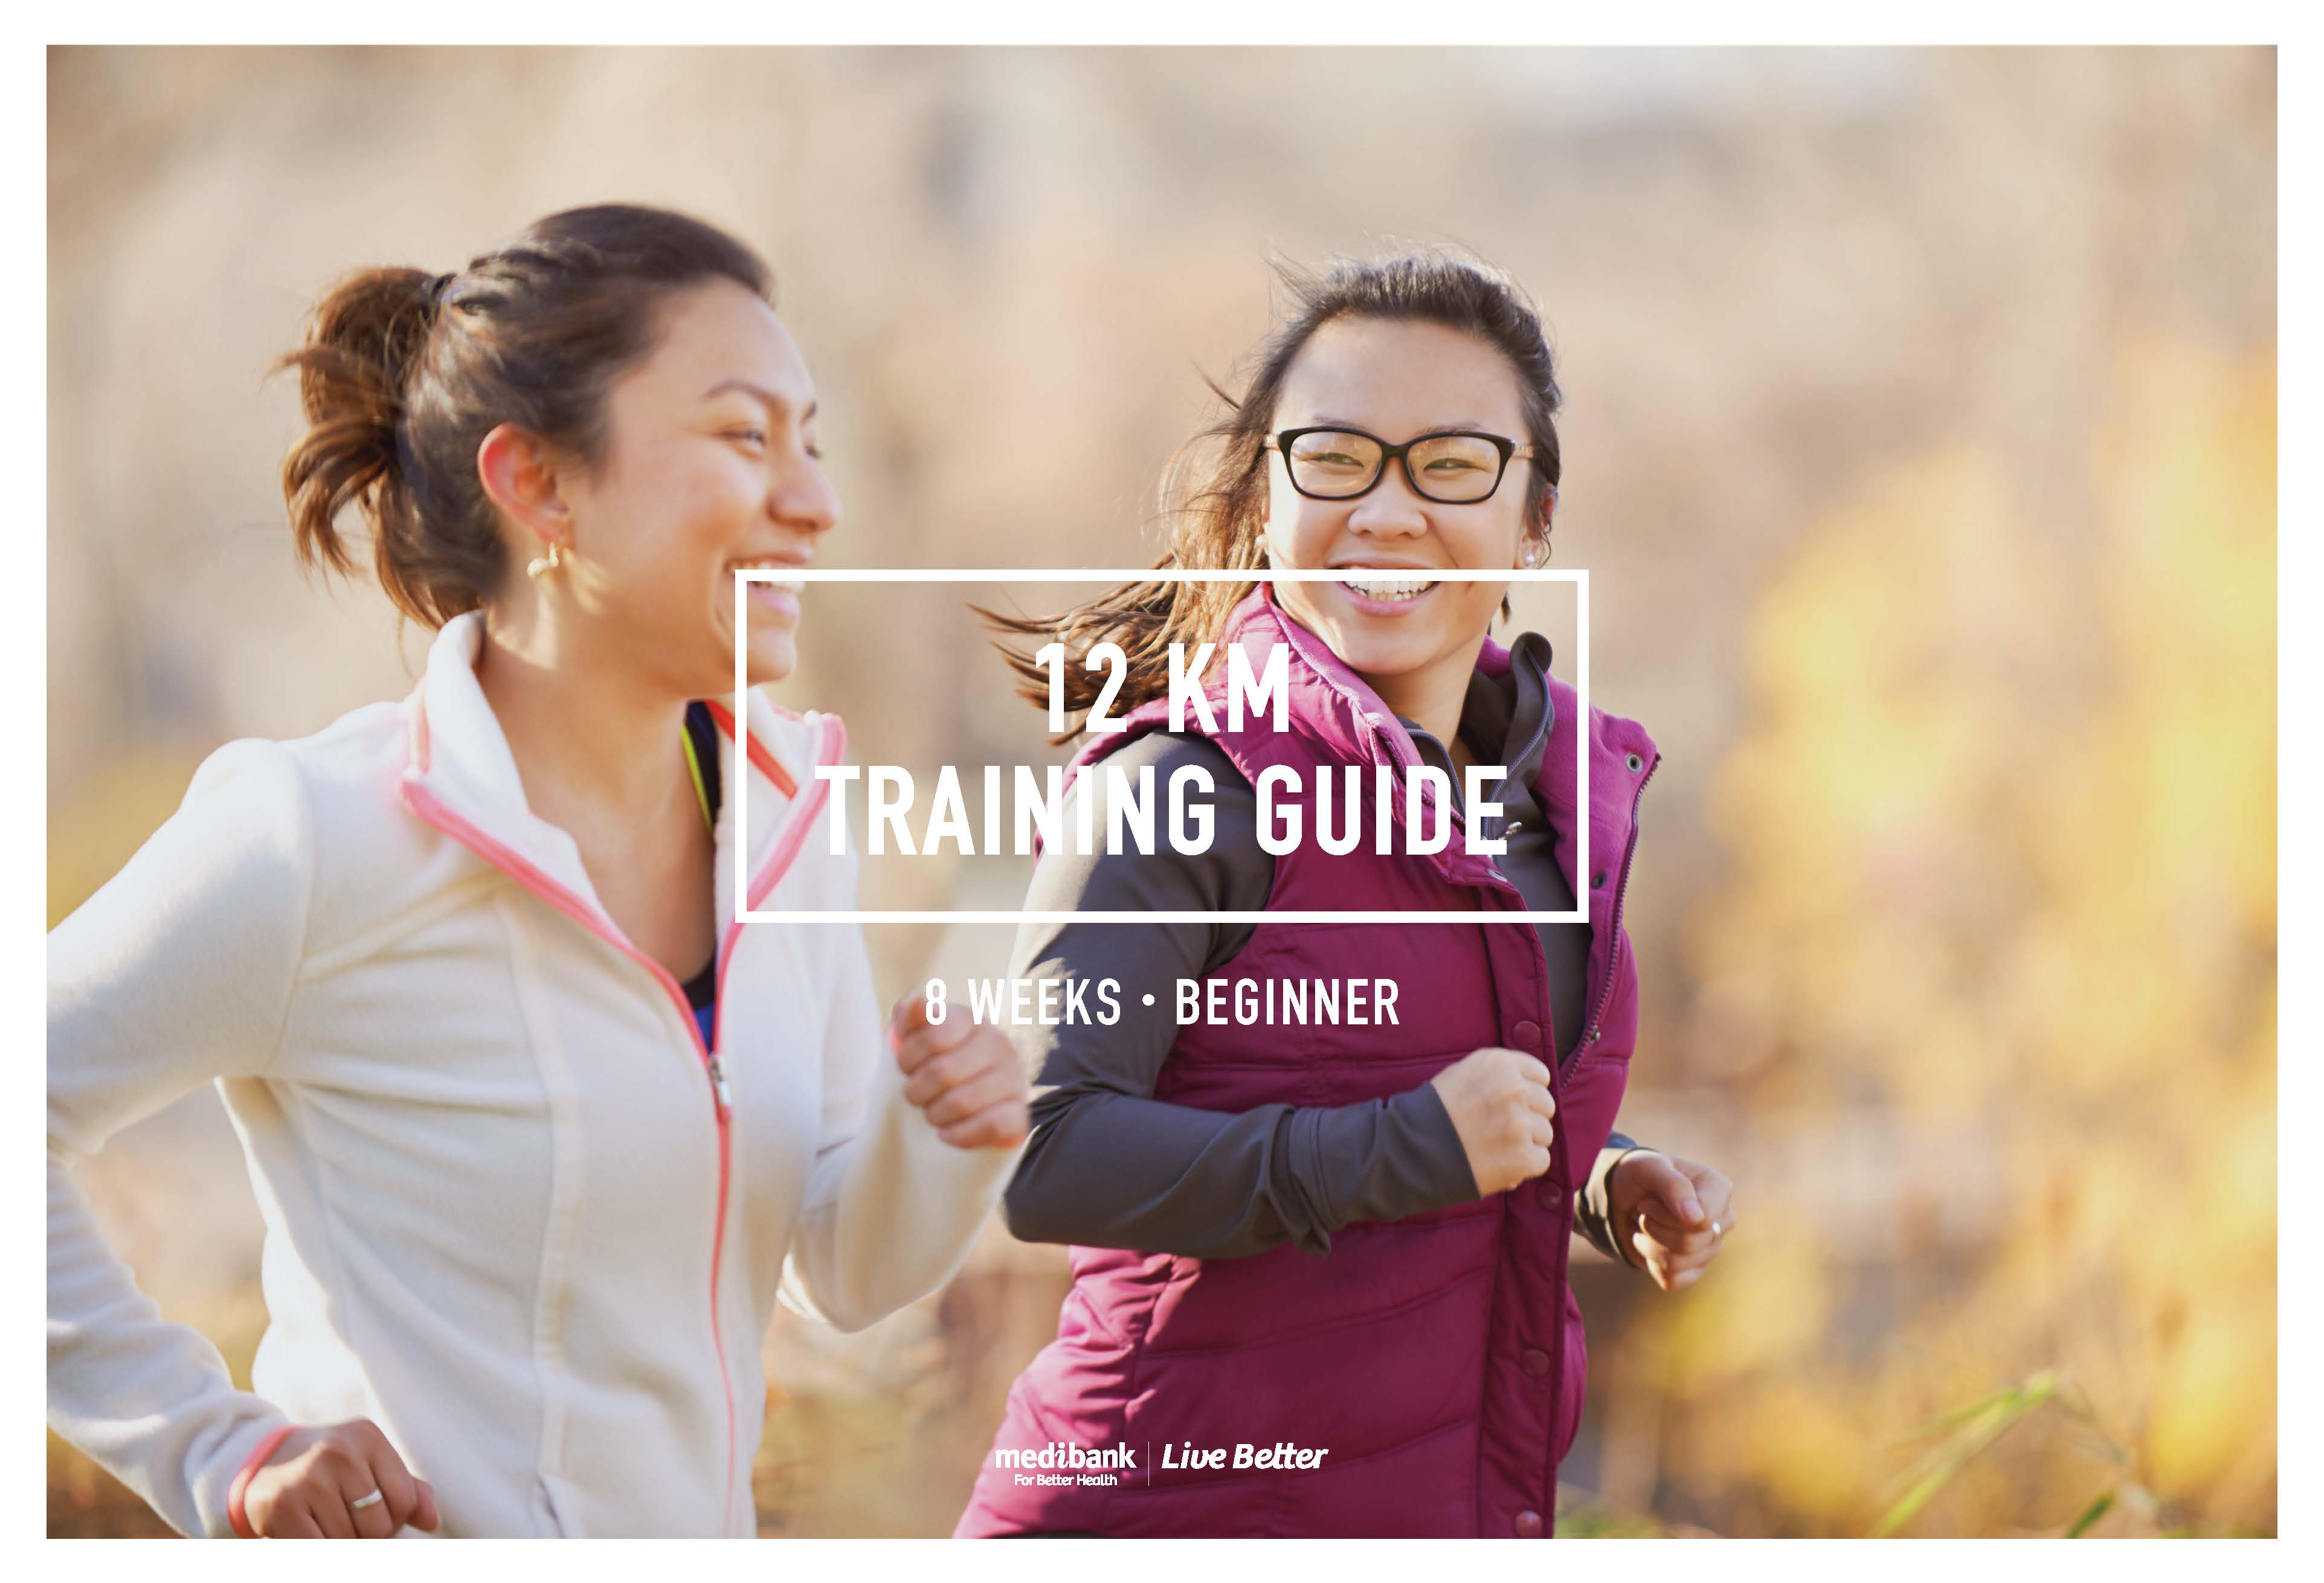 Encommium Fitness opskrift 12 km Training Guide (Beginner – 8 Weeks) | Live Better